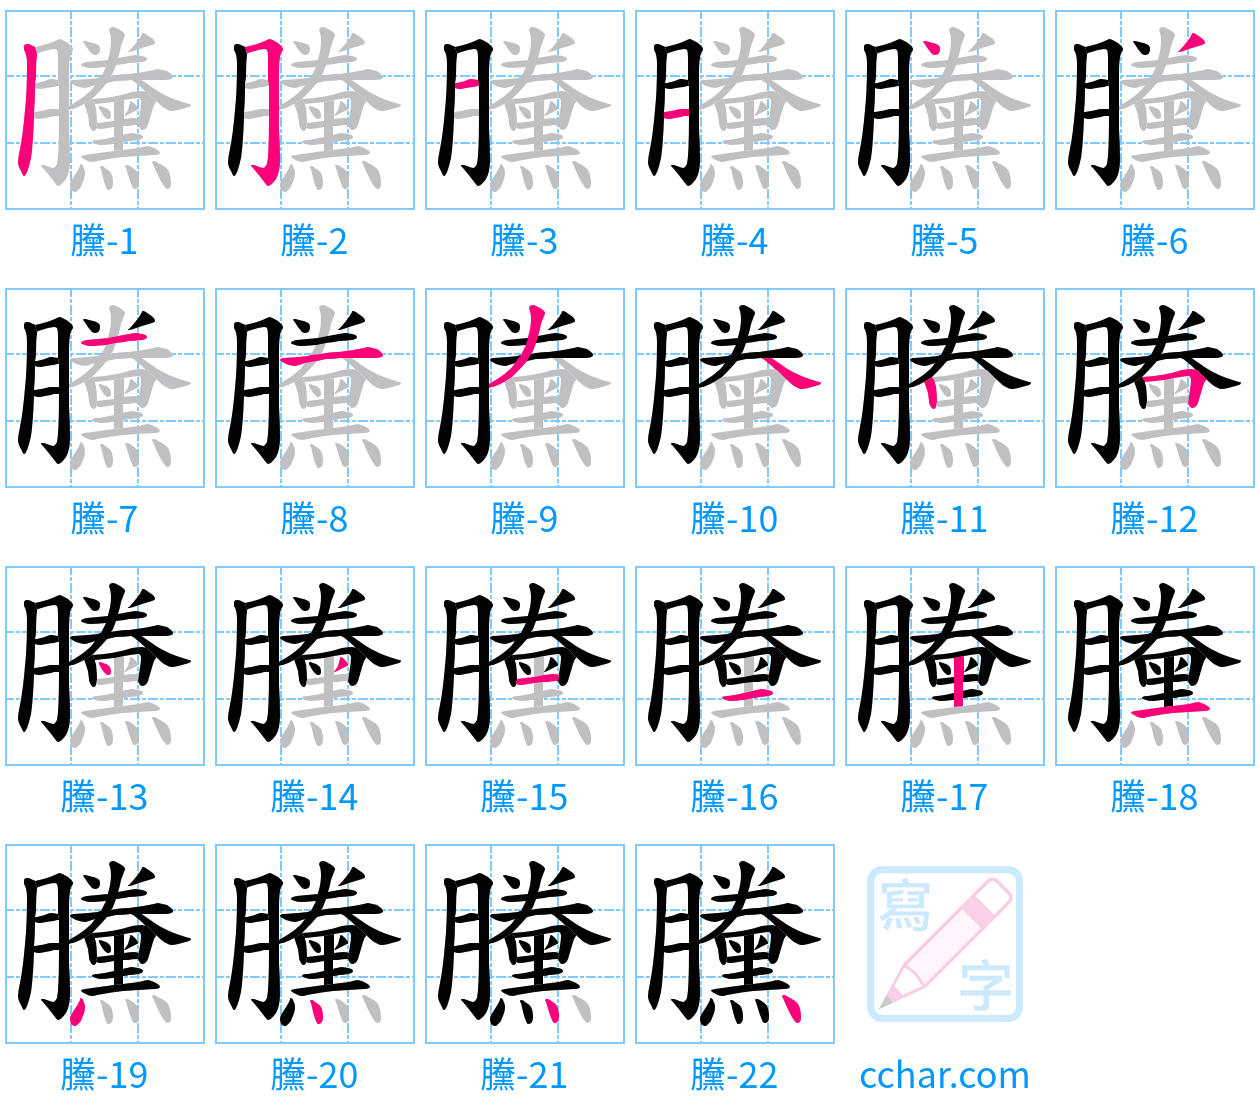 黱 stroke order step-by-step diagram